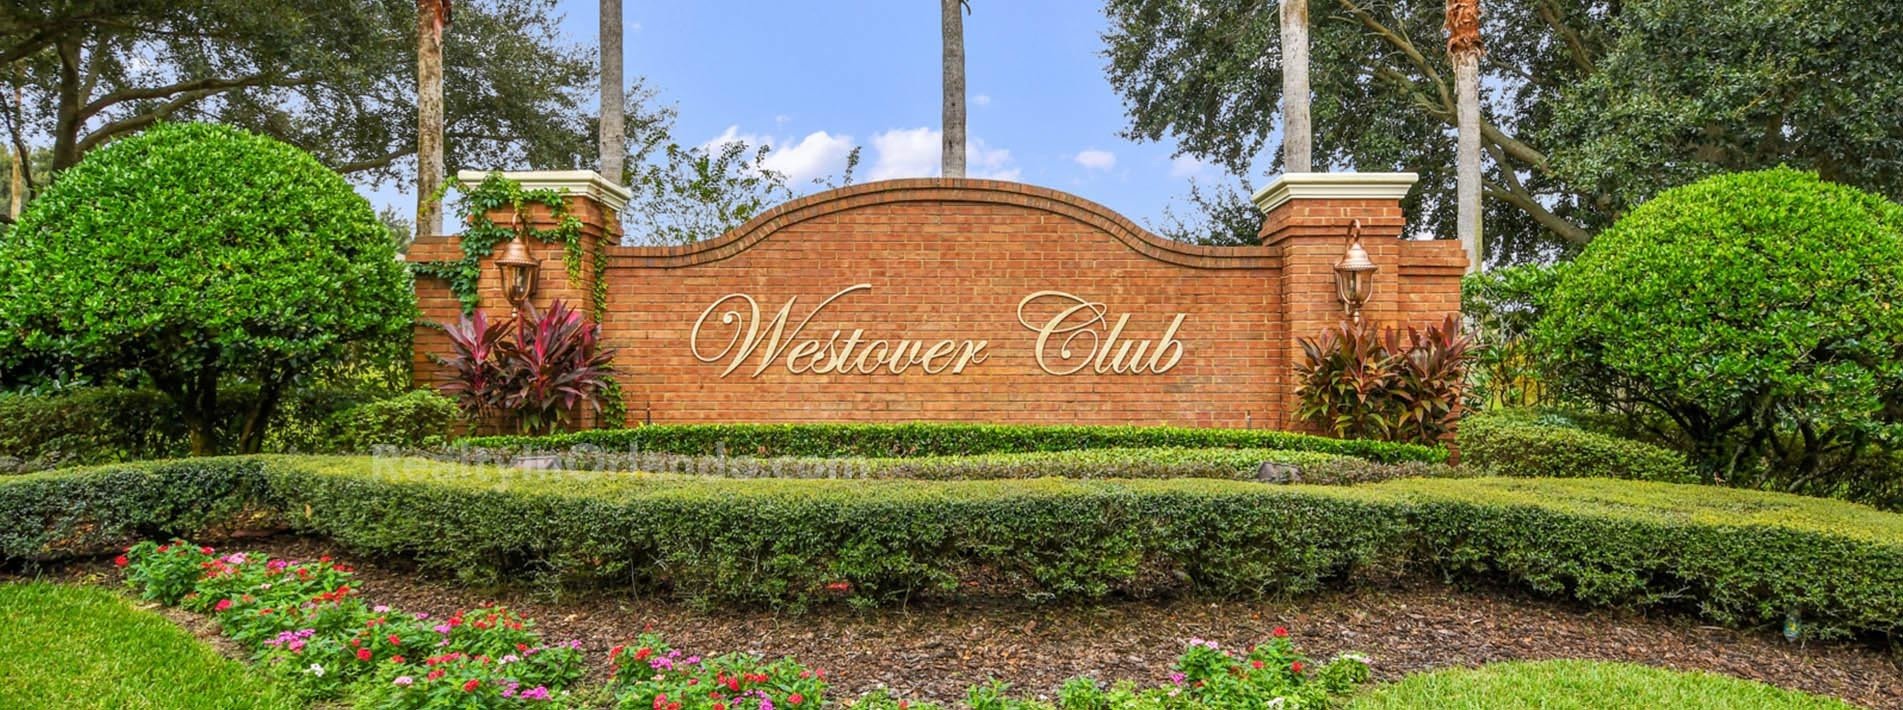 Westover Club Windermere